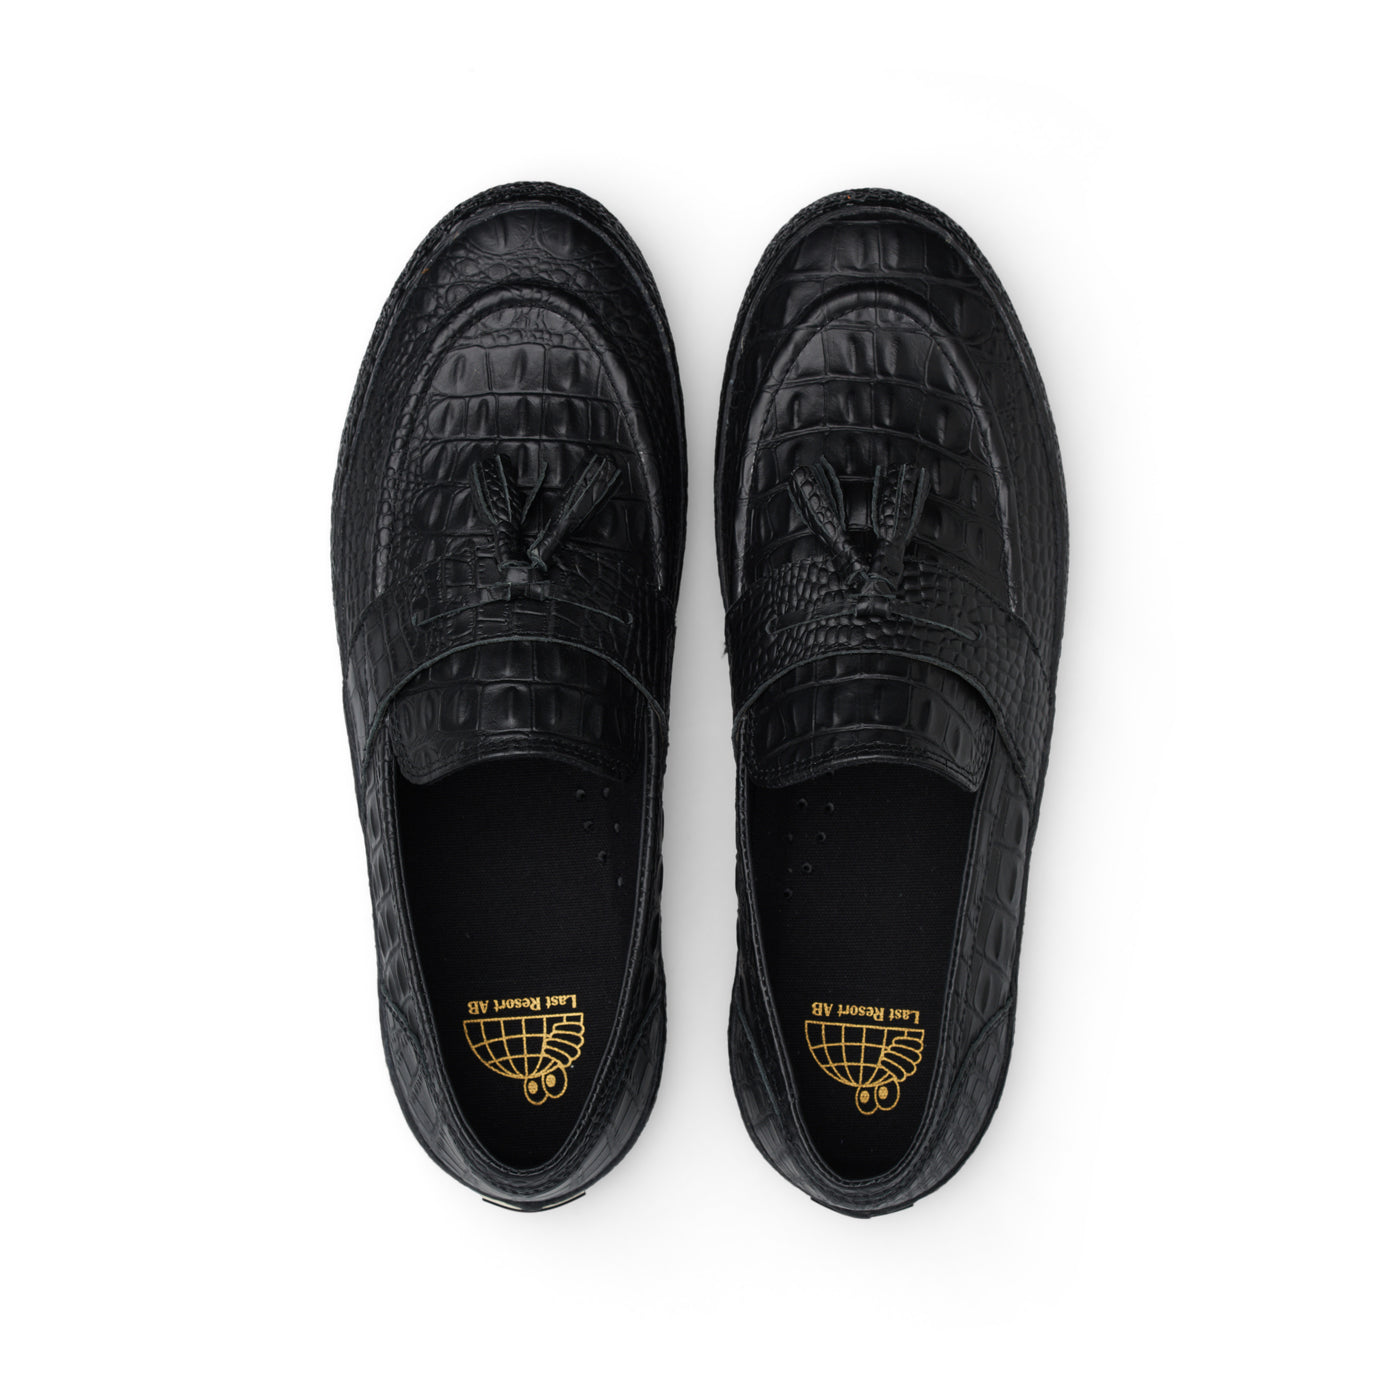 VM005-Loafer Leather (Croc Black/Black)